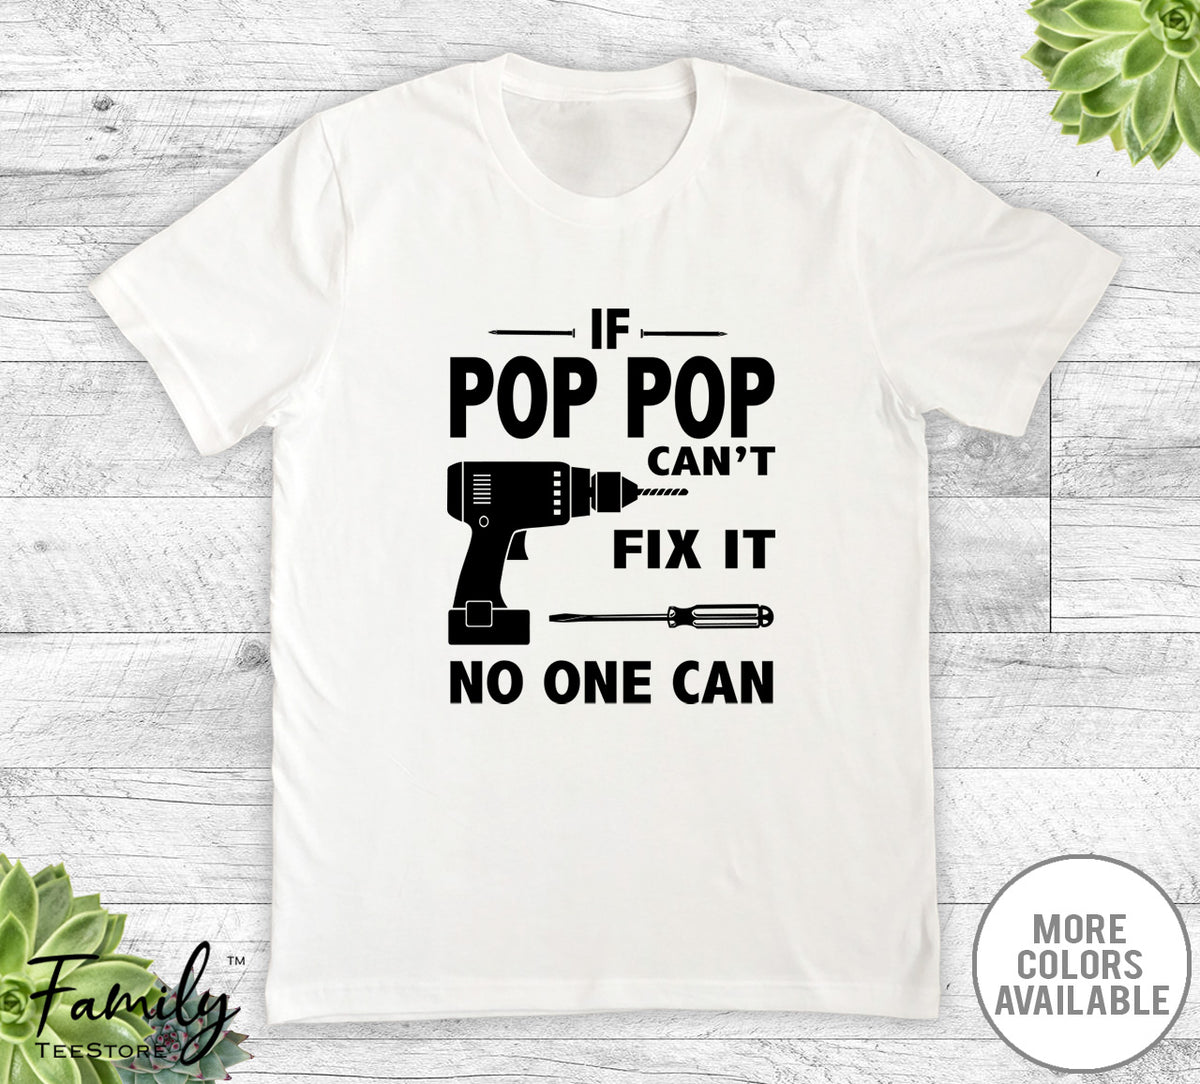 If Pop Pop Can't Fix It No One Can - Unisex T-shirt - Pop Pop Shirt - Pop Pop Gift